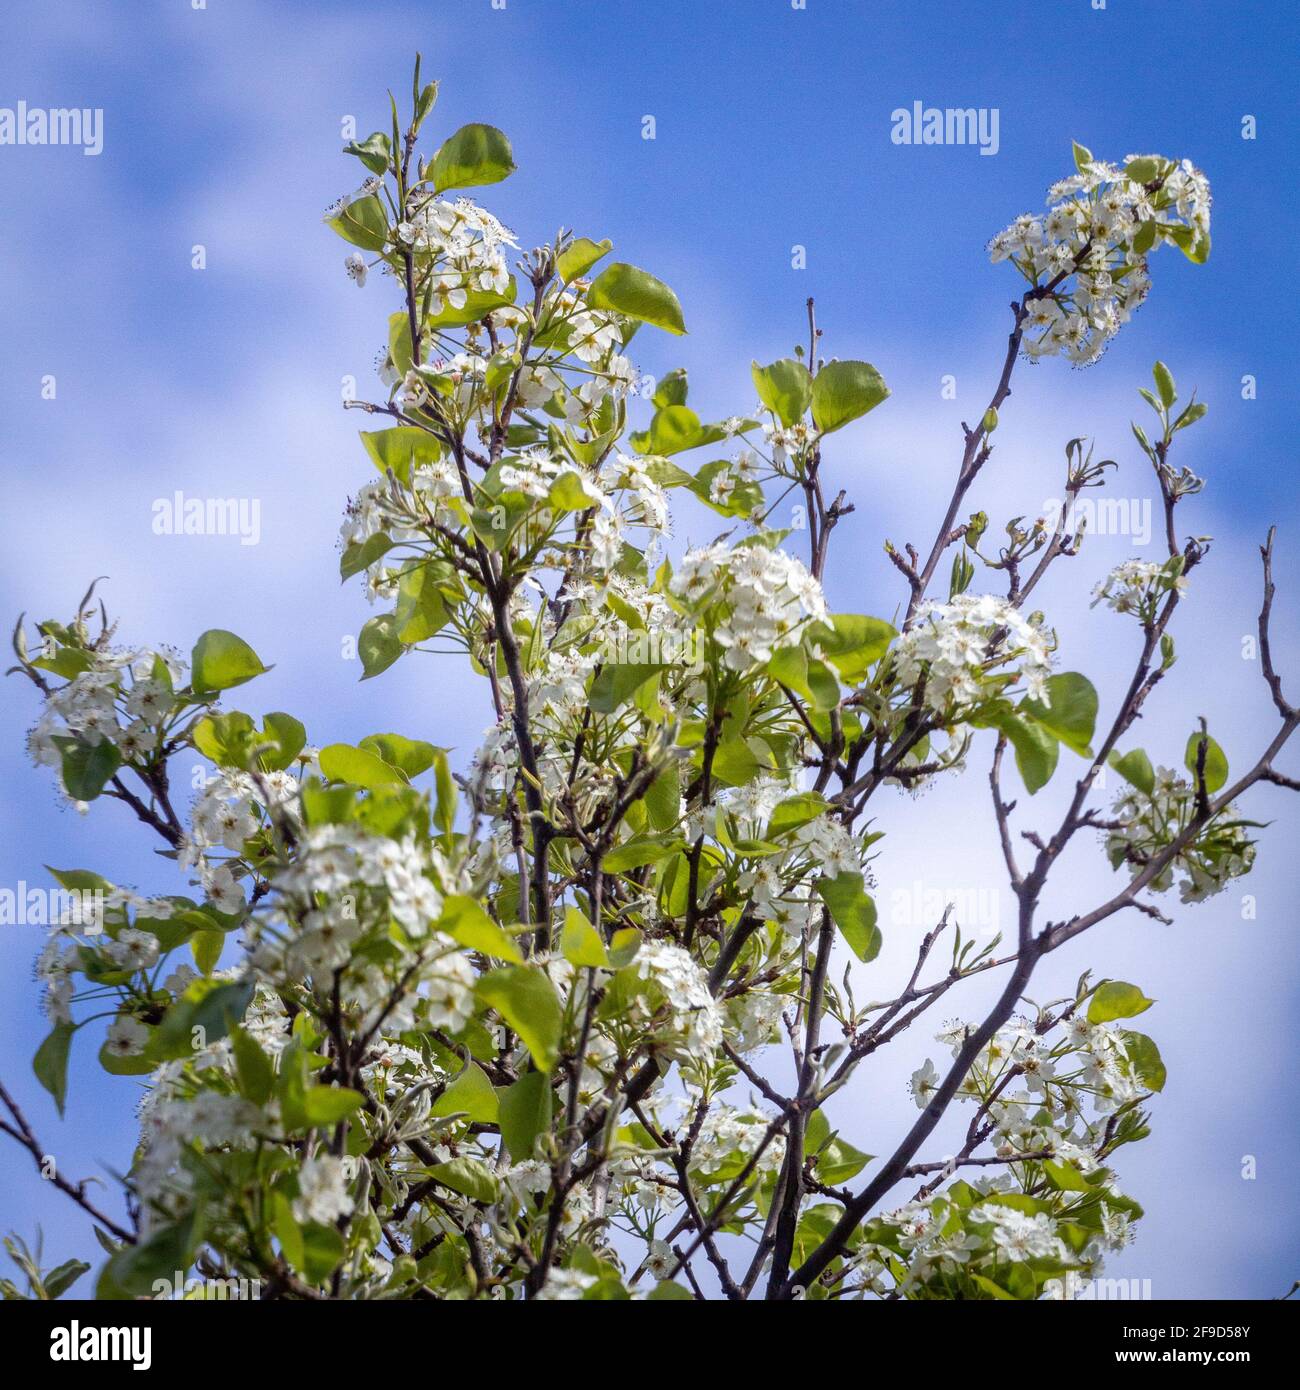 Primer plano de una ramita de árbol con flores blancas y verdes sale en un día soleado contra un cielo azul Foto de stock